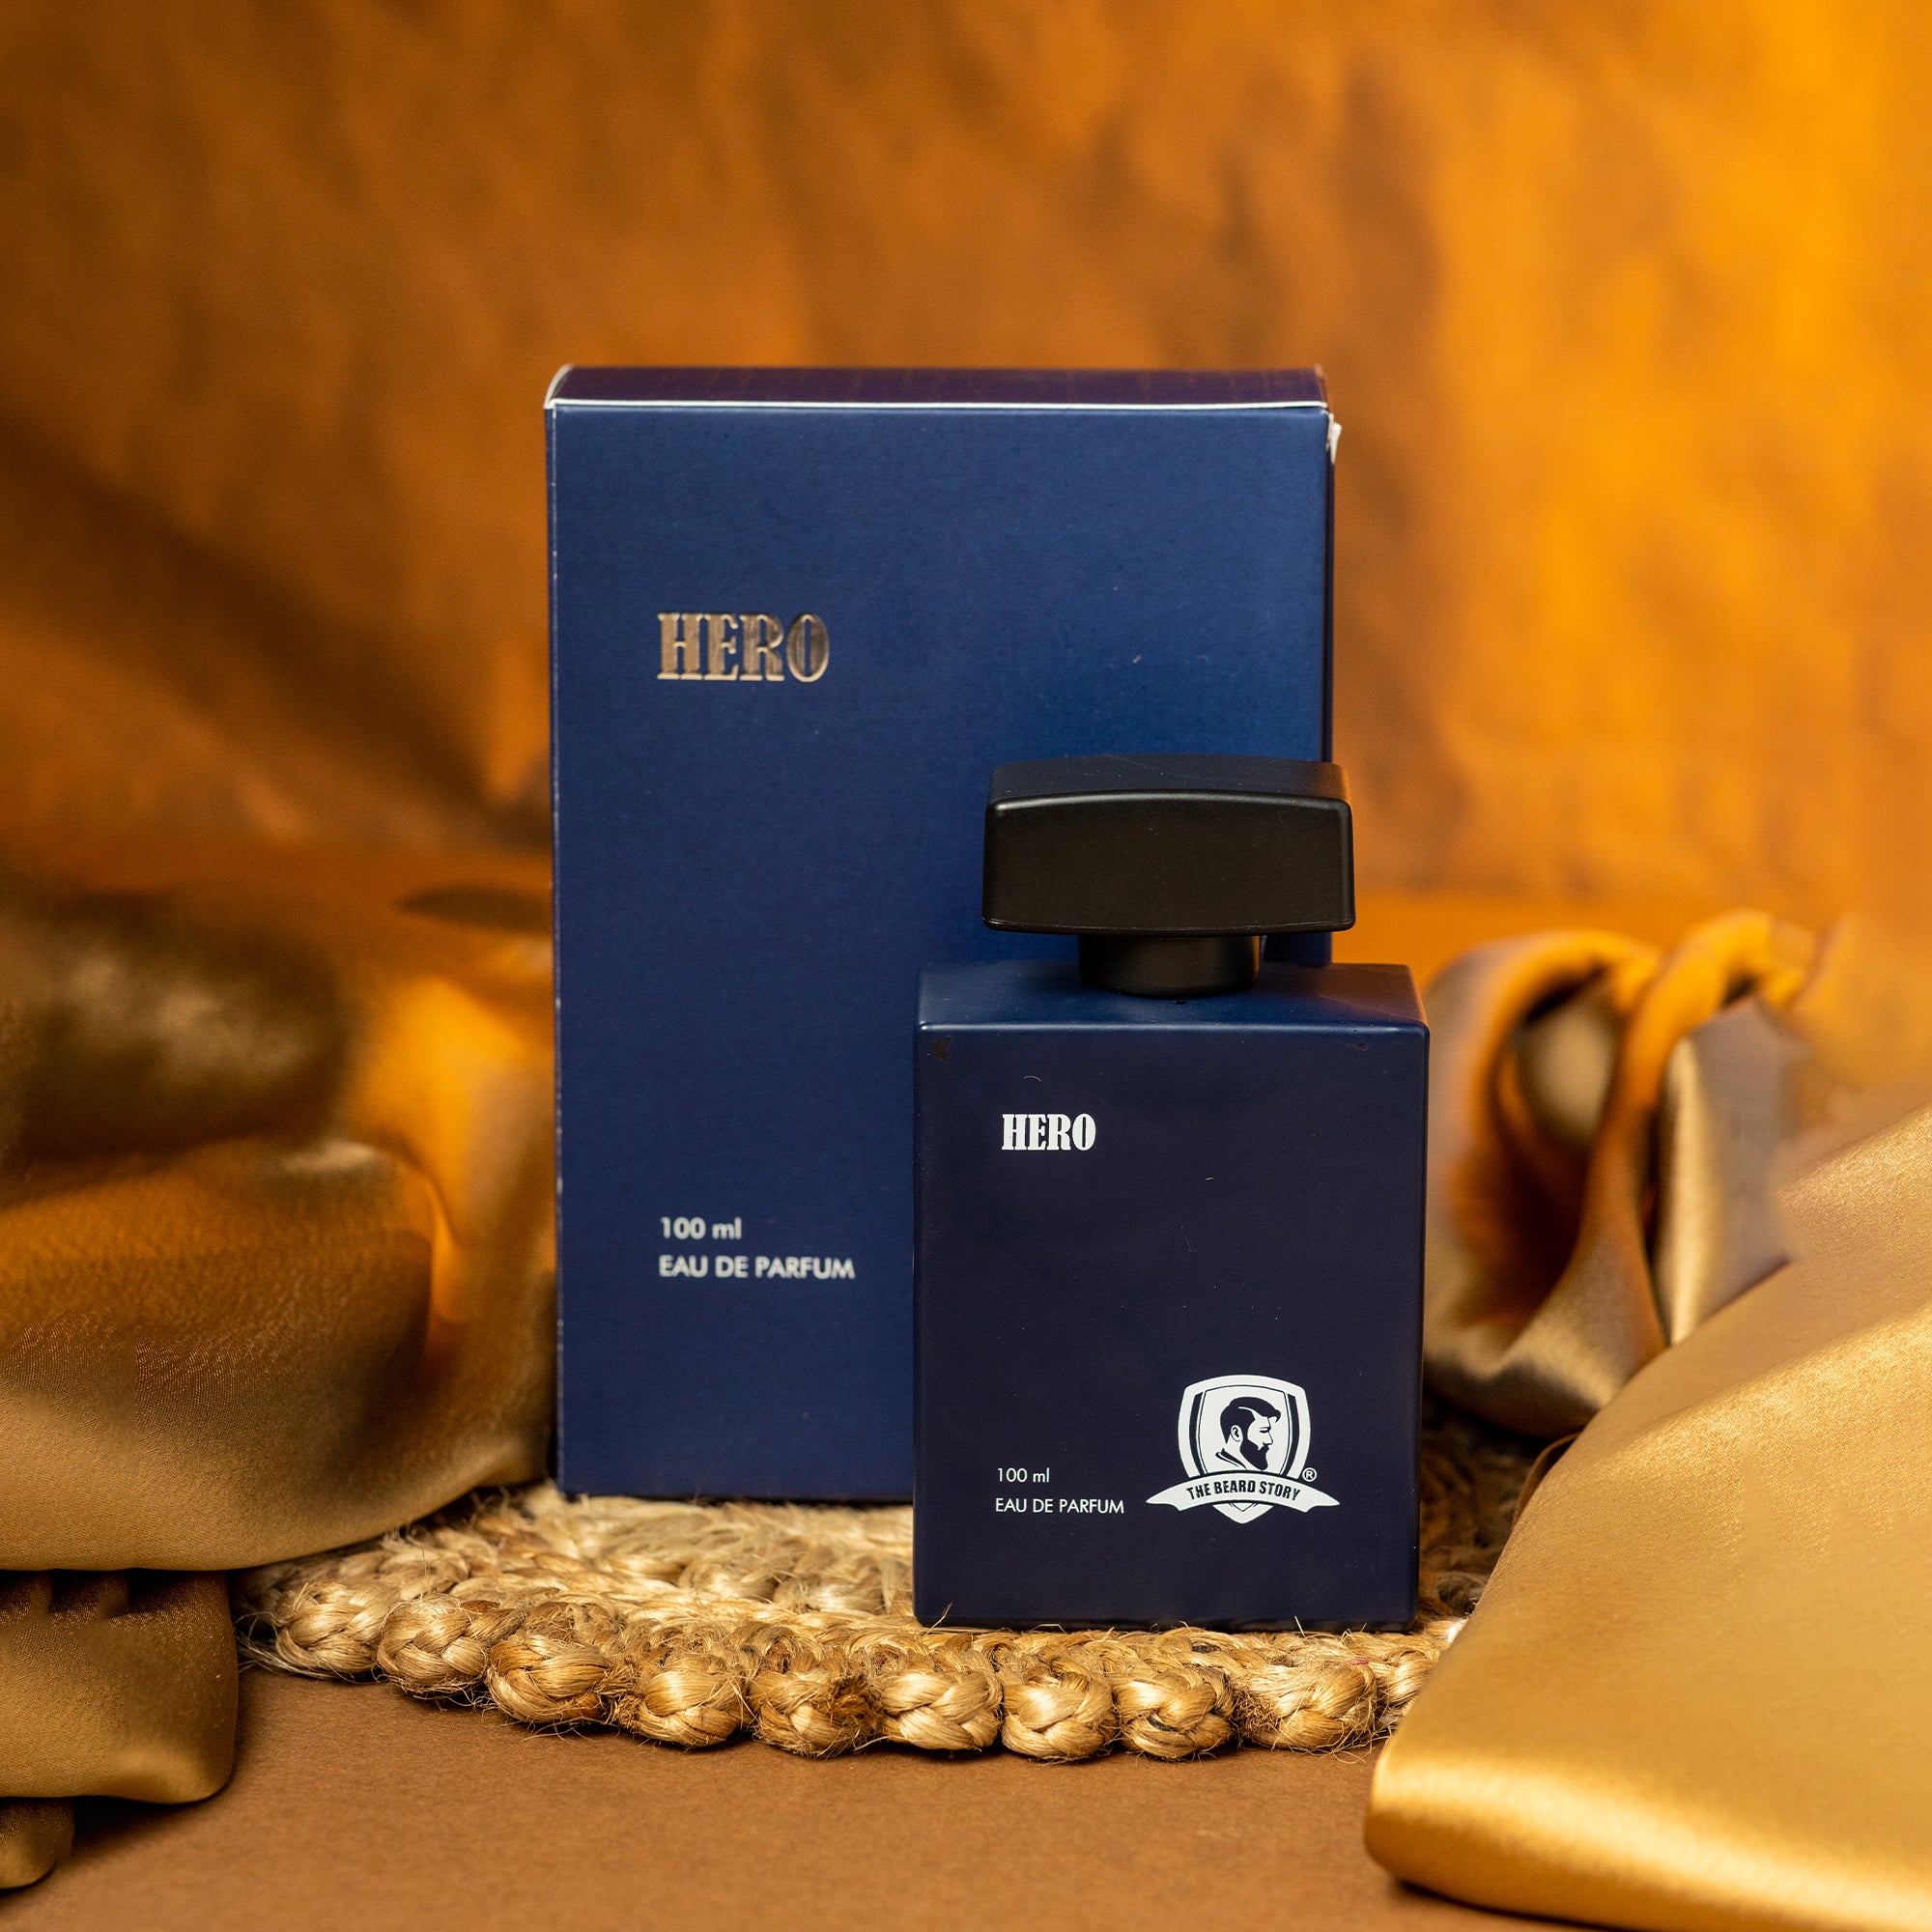 The Beard Story Perfume | Perfume for him| Hero | Eau De Perfume | 100 ml